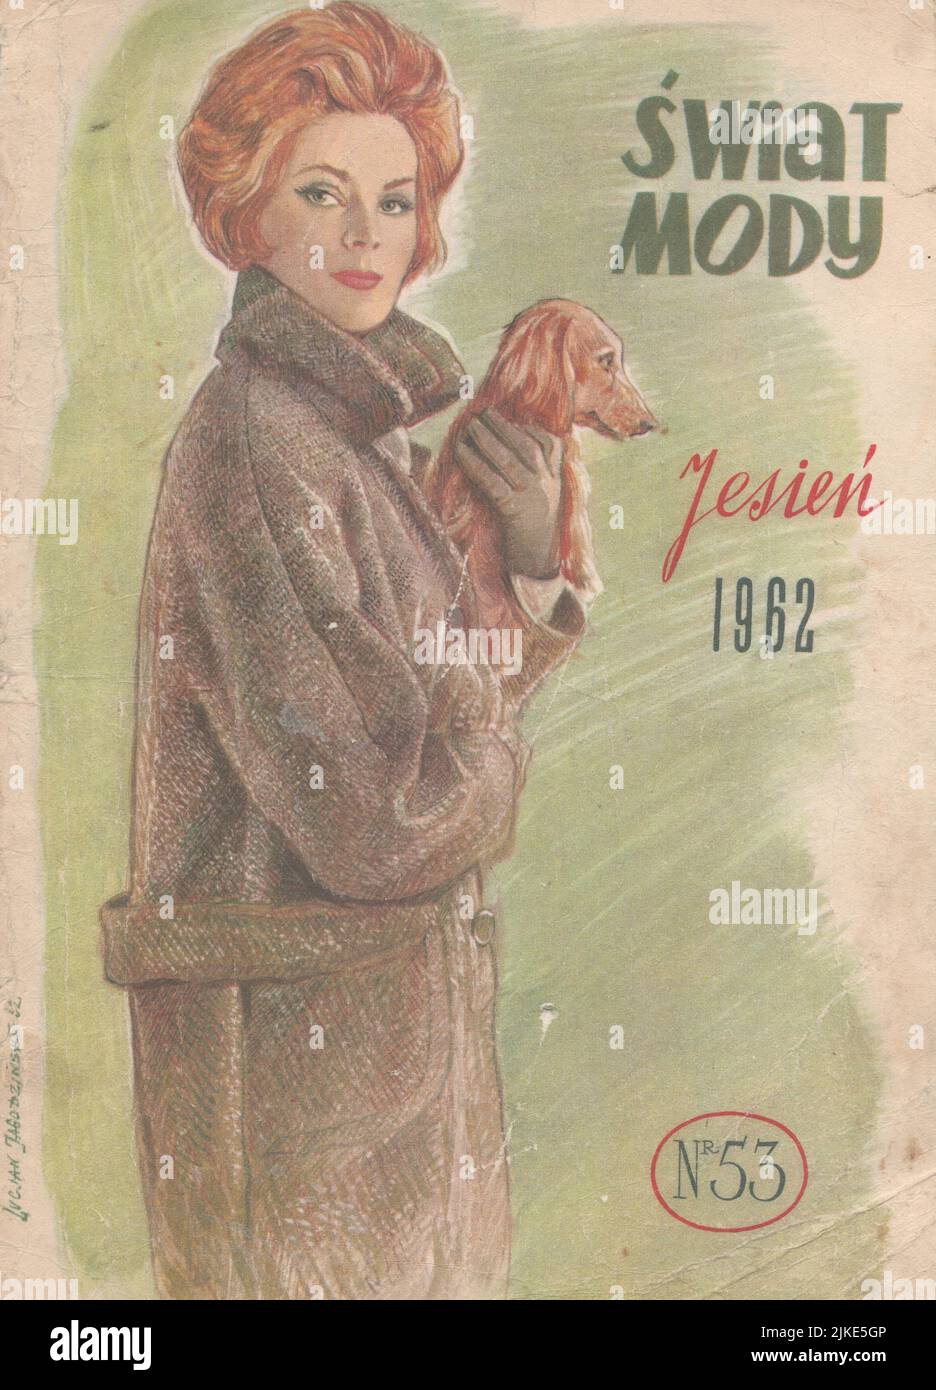 Okładka Świat Mody jesień 1962 rok, polski magazyn dla kobiet z czasów PRL kolorowe czasopismo dla kobiet, zdjecie Lucjan Jagodzinski Stock Photo